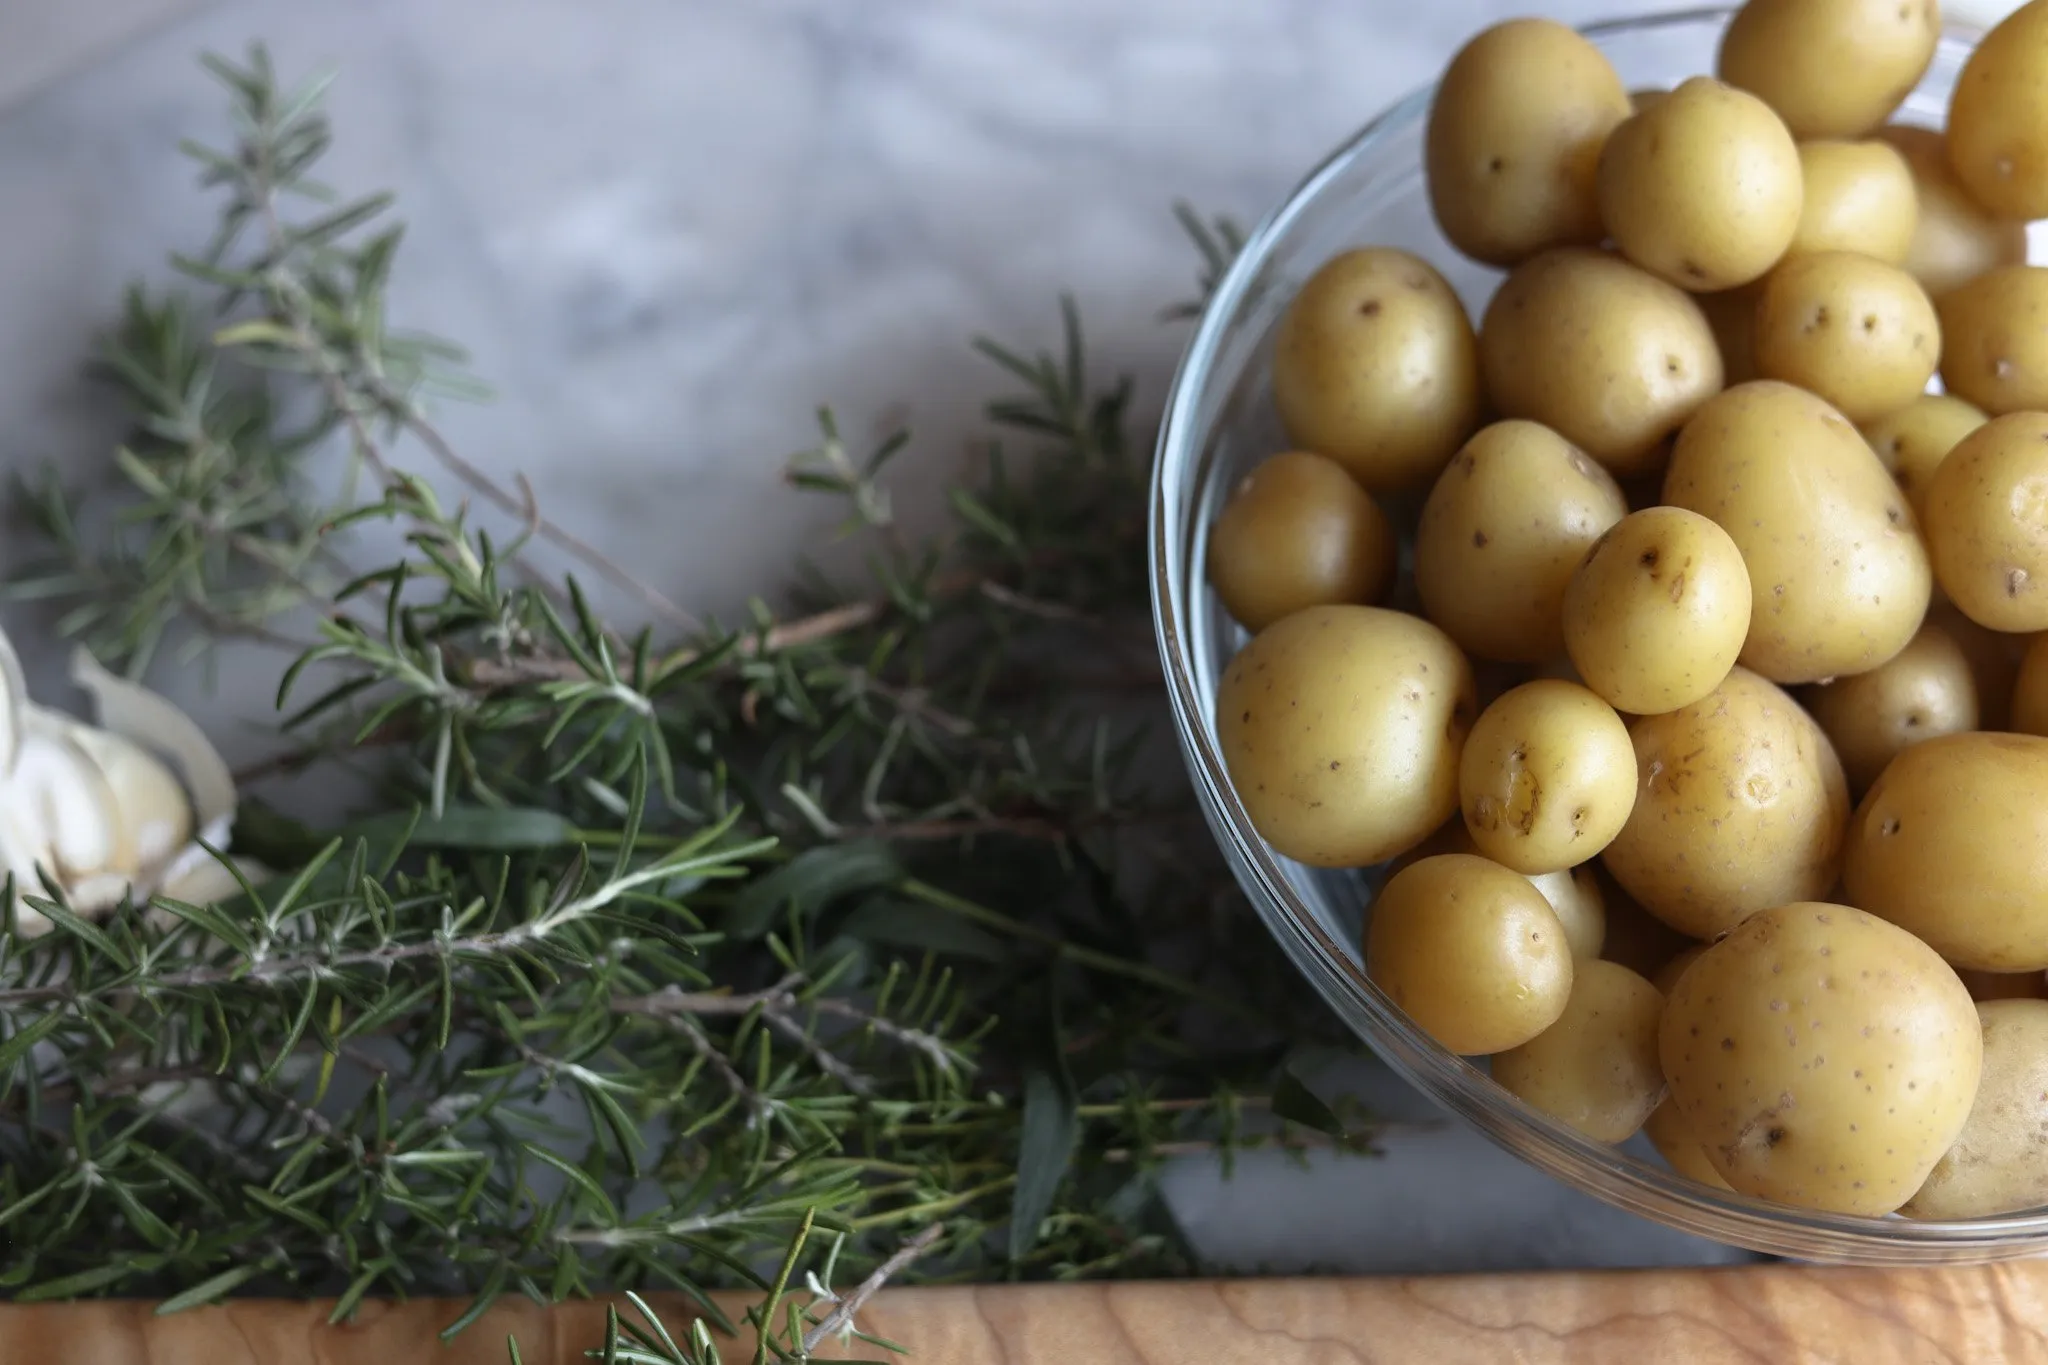 mini yellow potatoes and fresh herbs